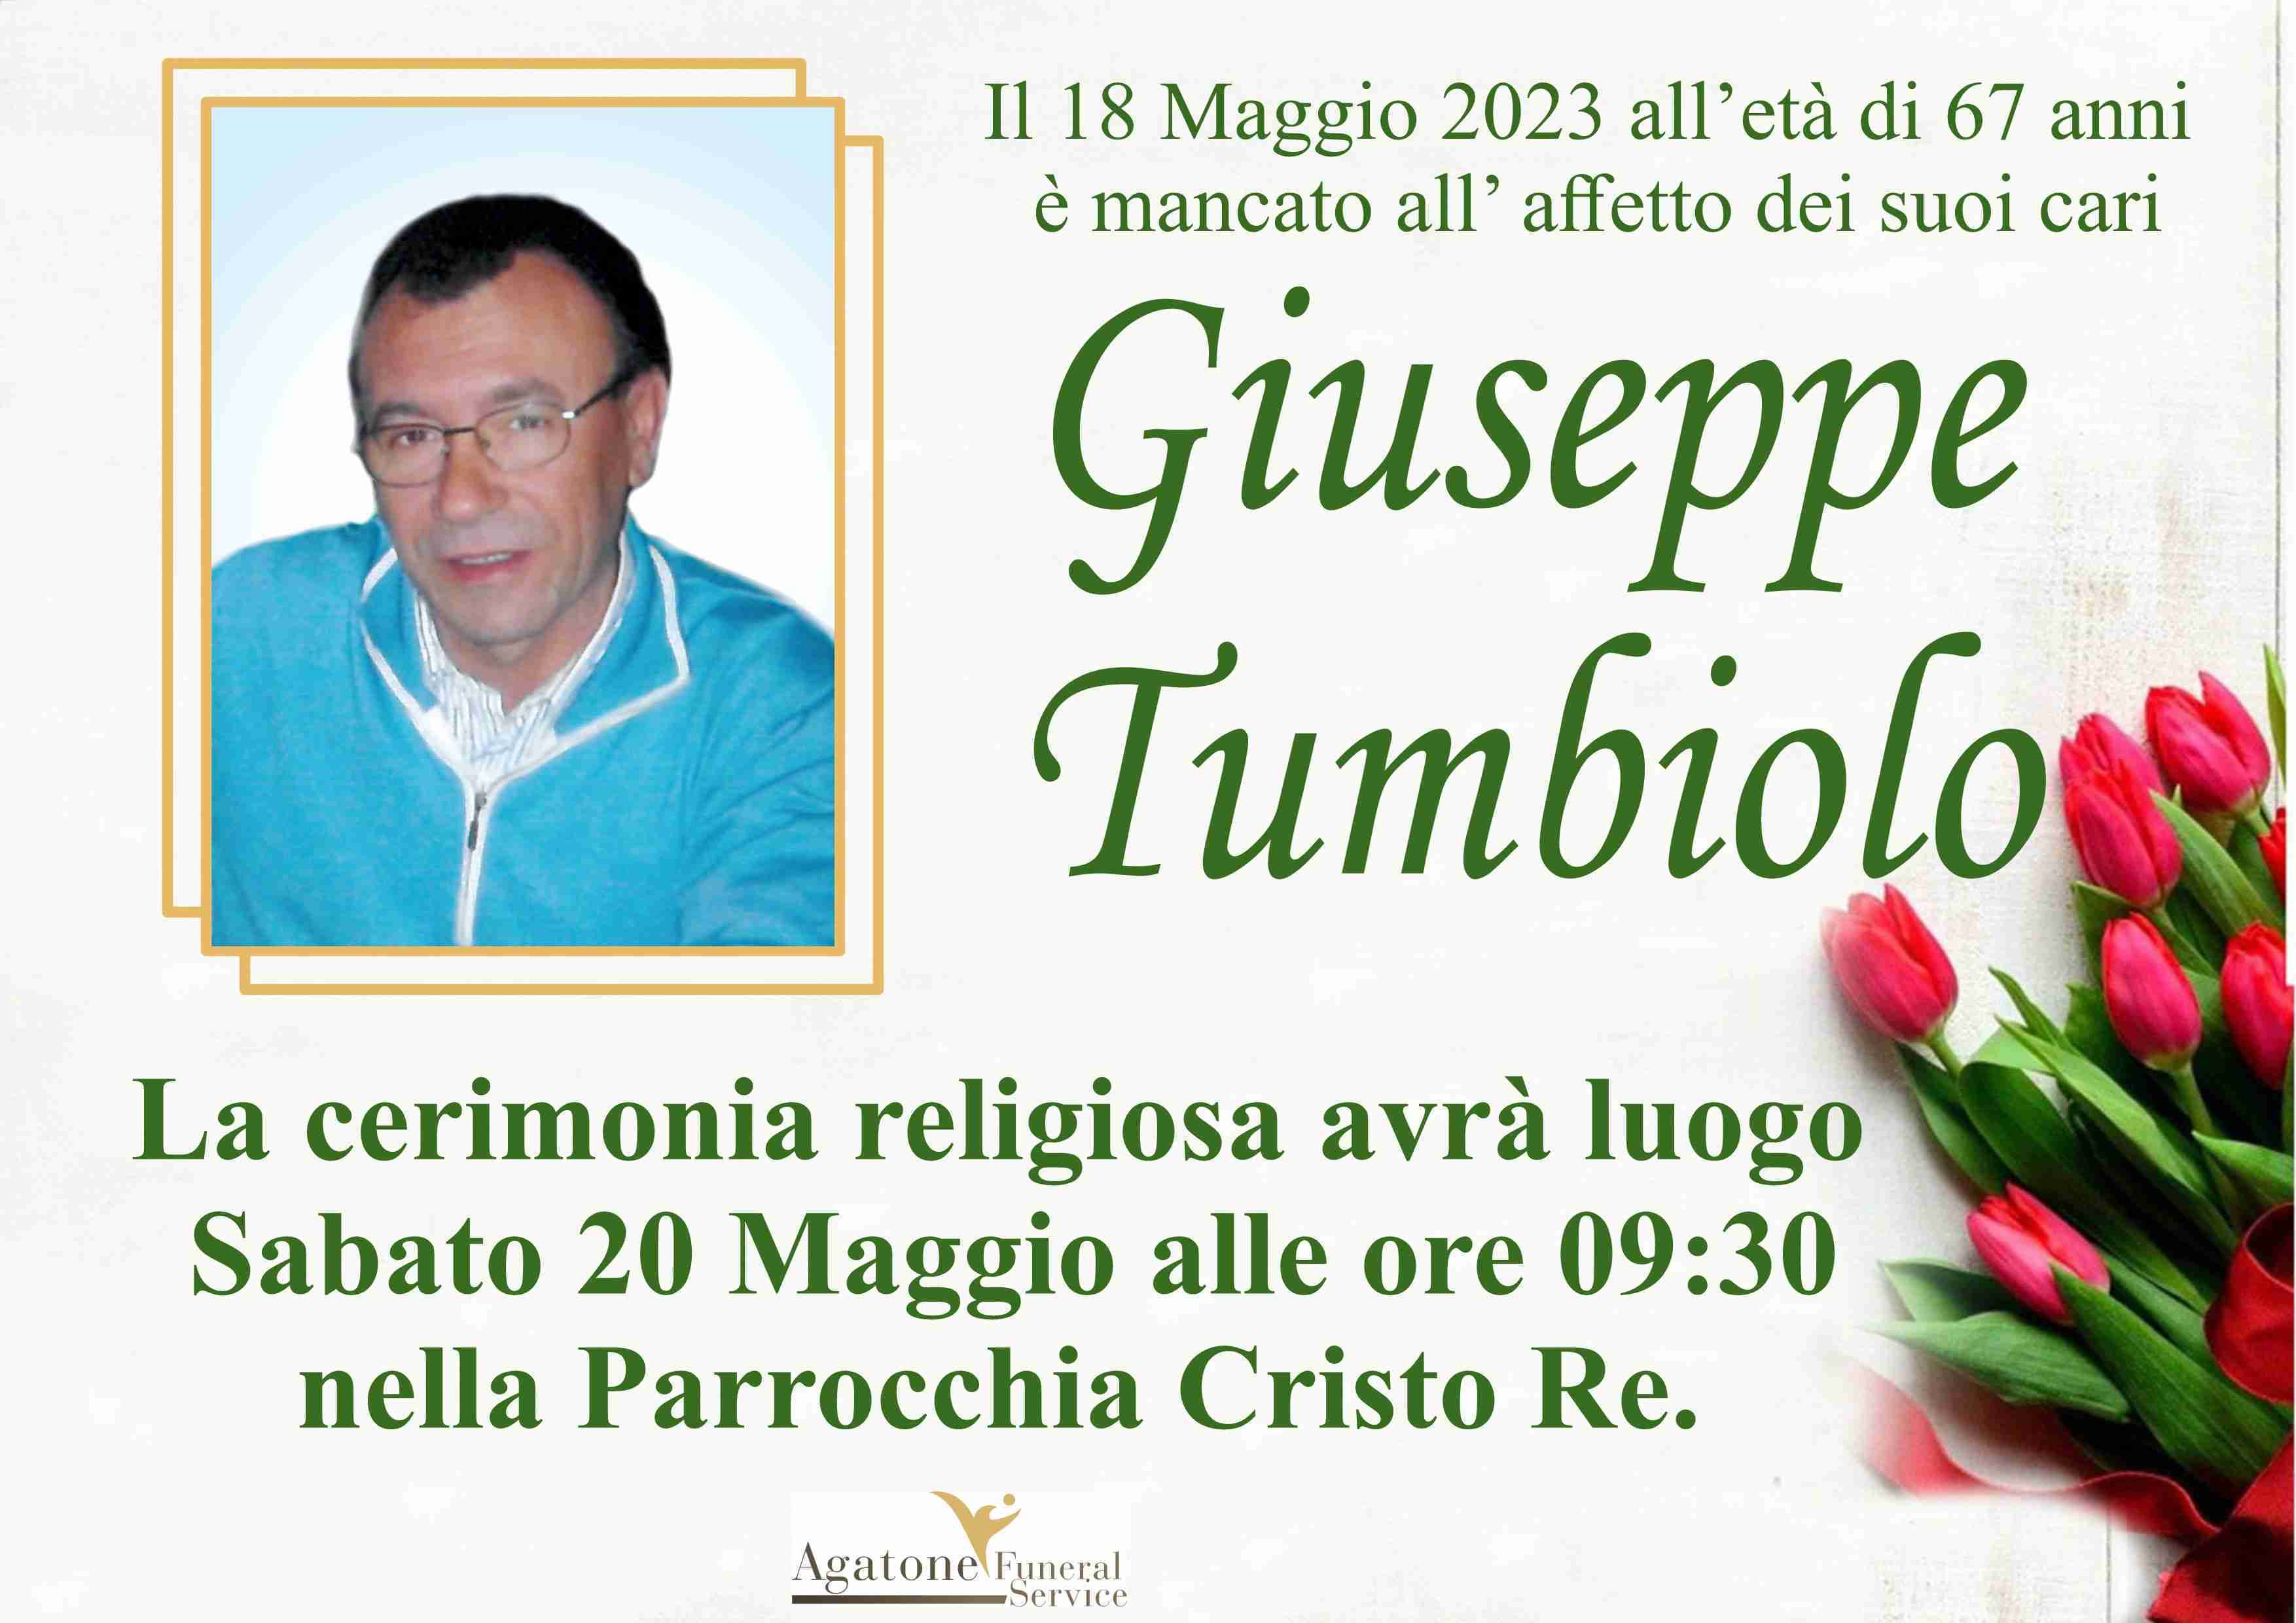 Giuseppe Tumbiolo